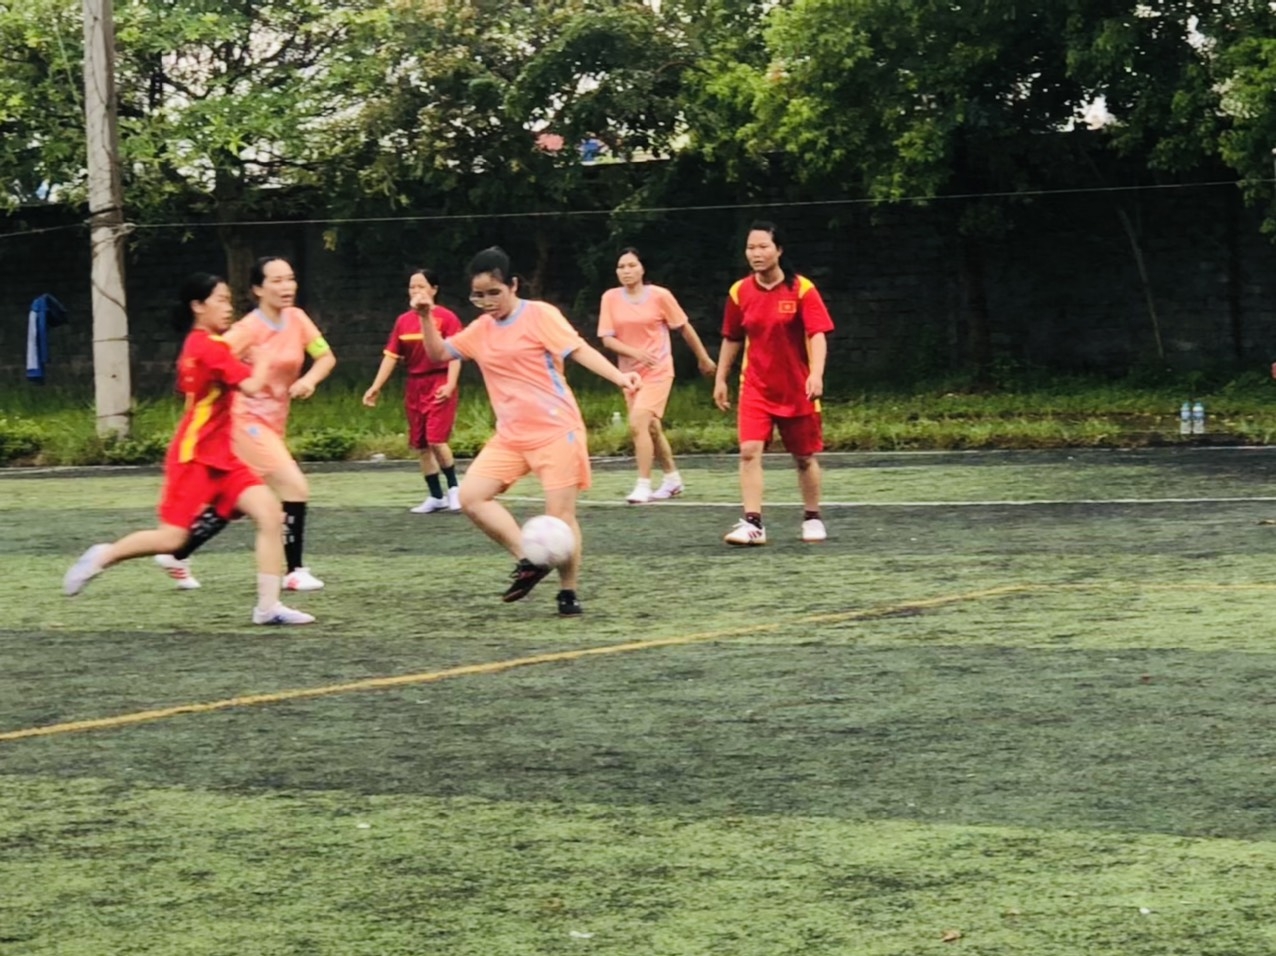 Thái Bình: Khai mạc “Giải bóng đá nữ thanh niên” huyện Quỳnh Phụ năm 2022